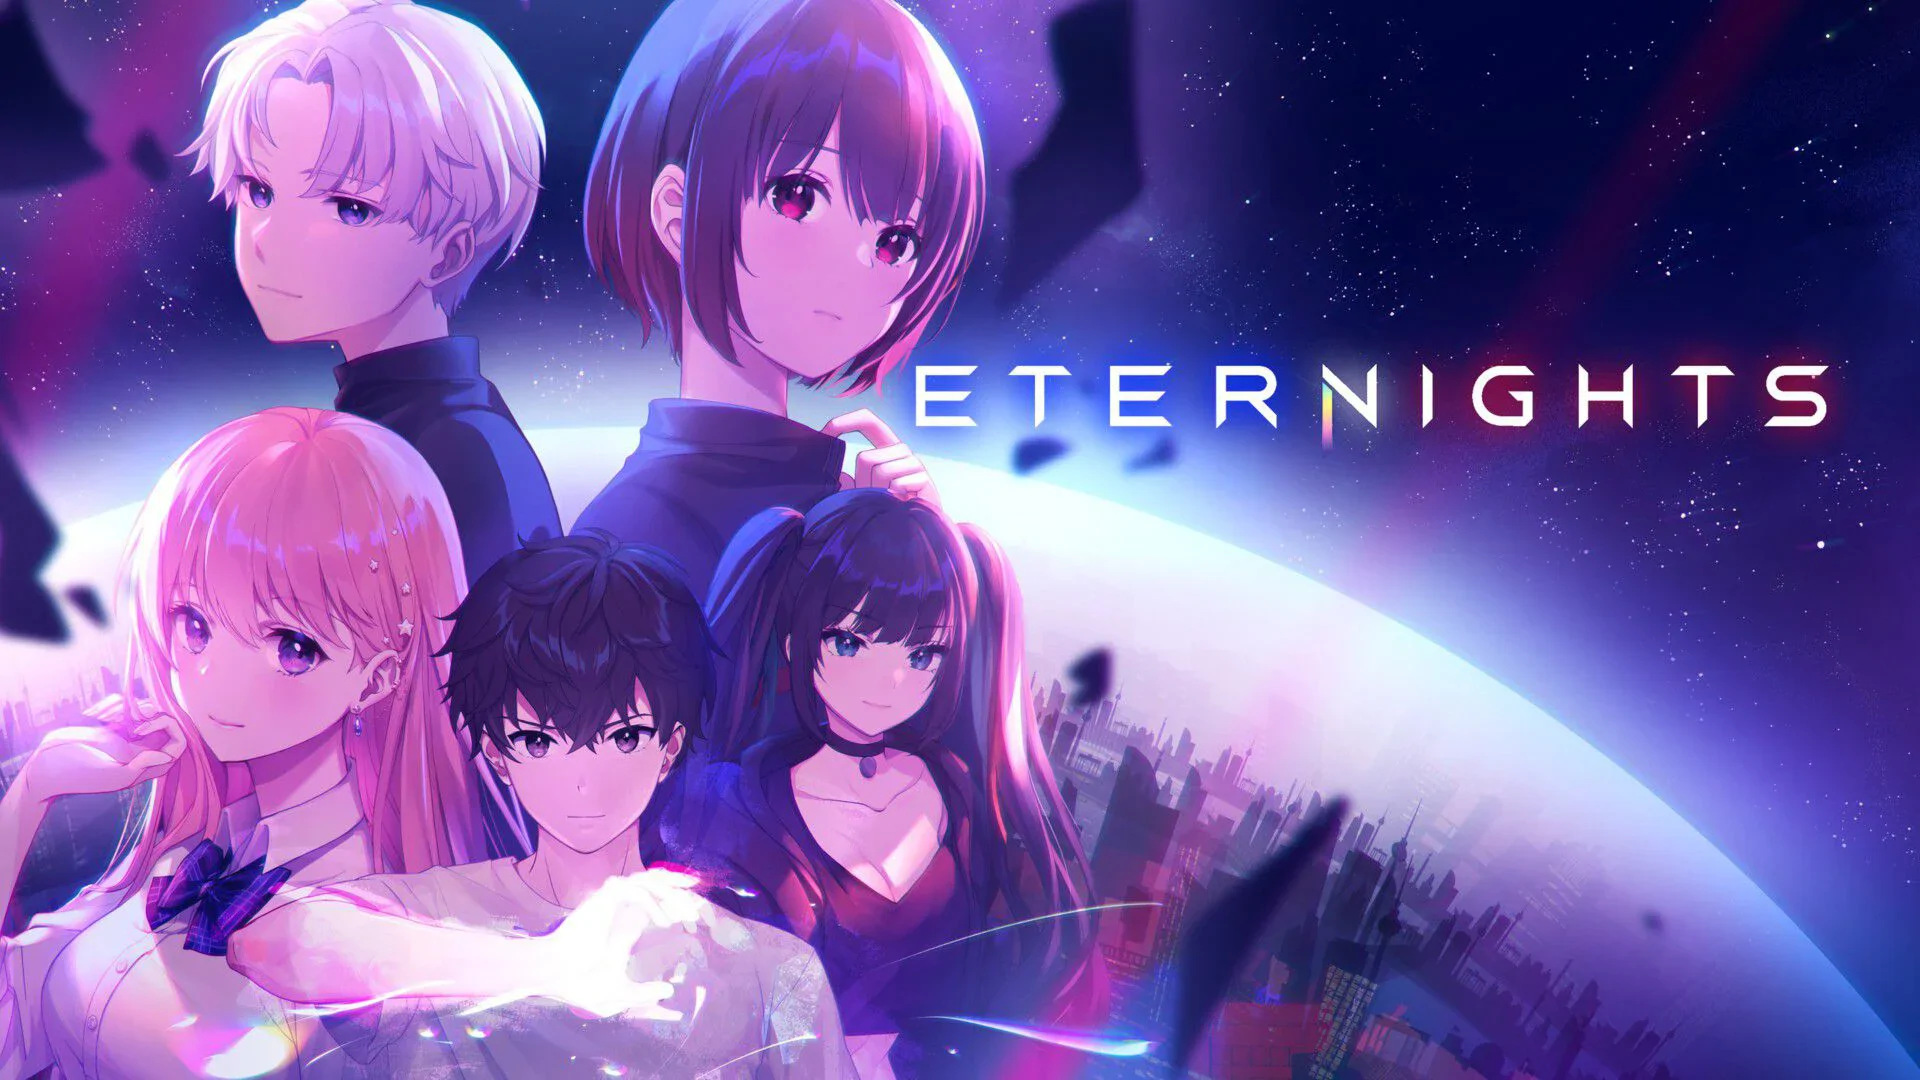 Eternights – recenzja gry. Koniec świata to idealny czas na romans